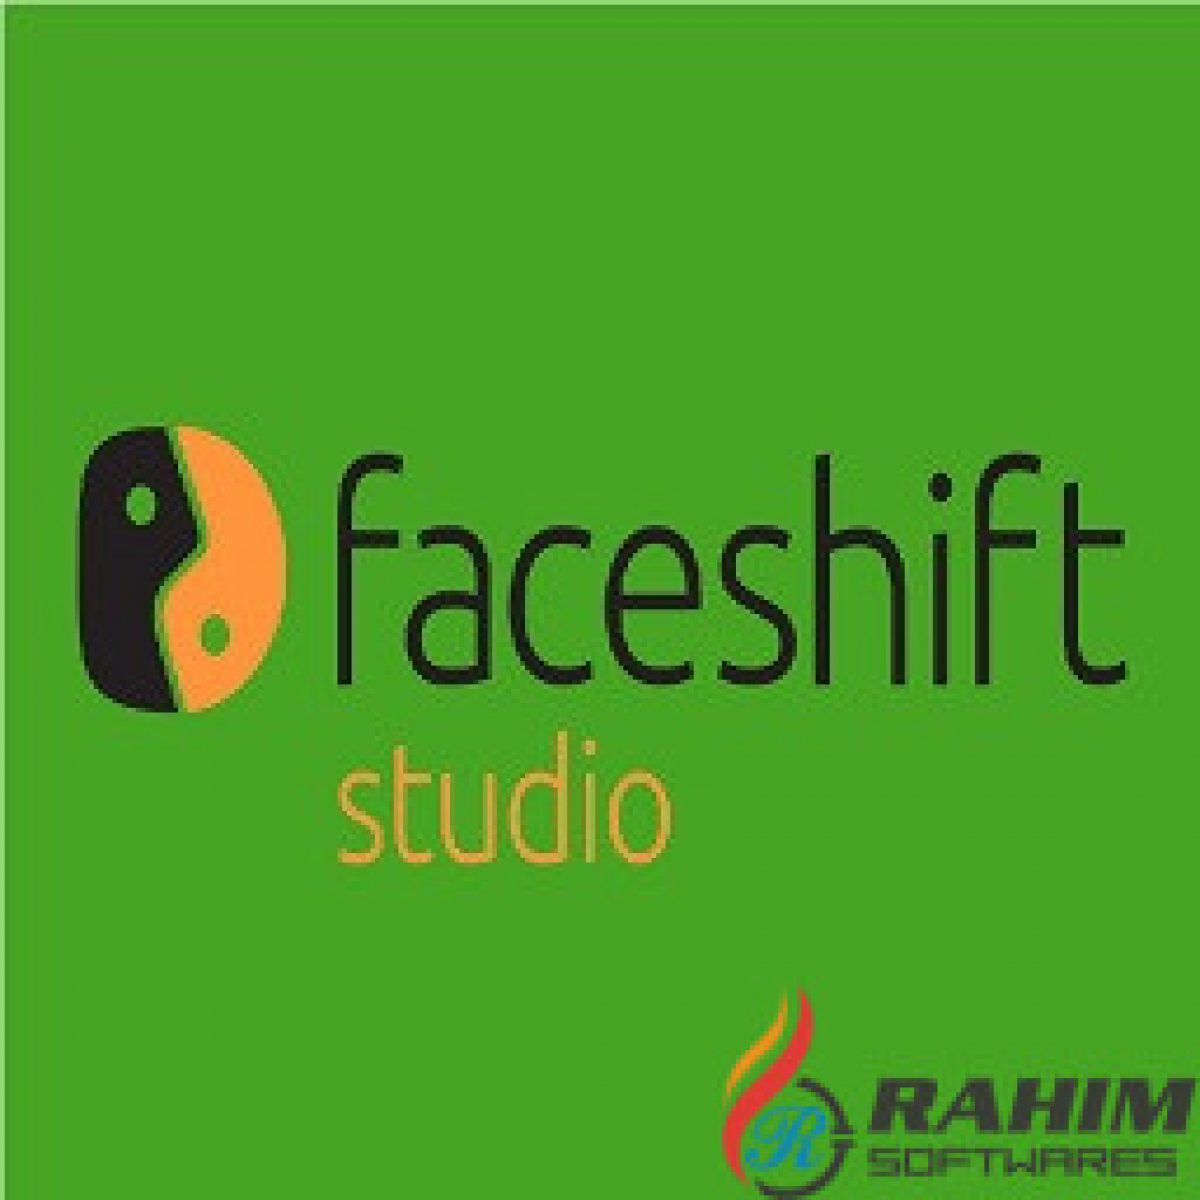 faceshift studio 2015 1.02 retail